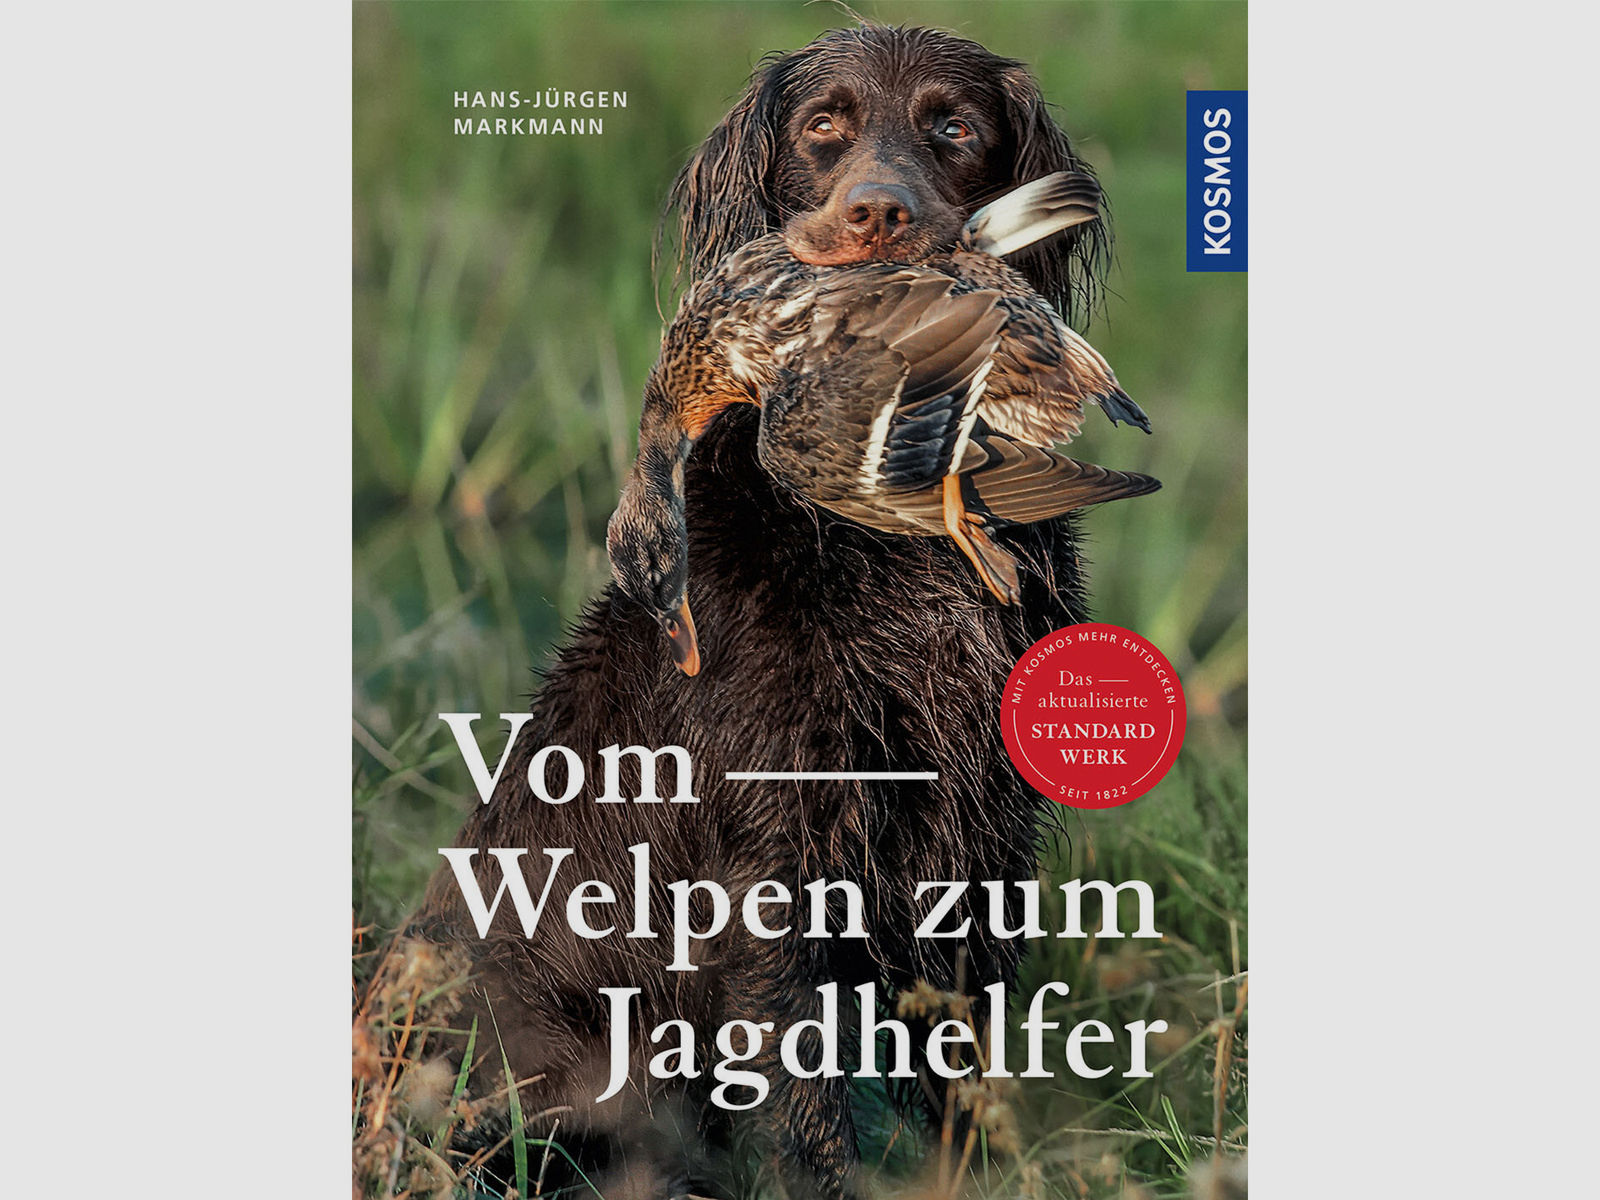 Vom Welpen zum Jagdhelfer - Buch - Hans-Jürgen Markmann